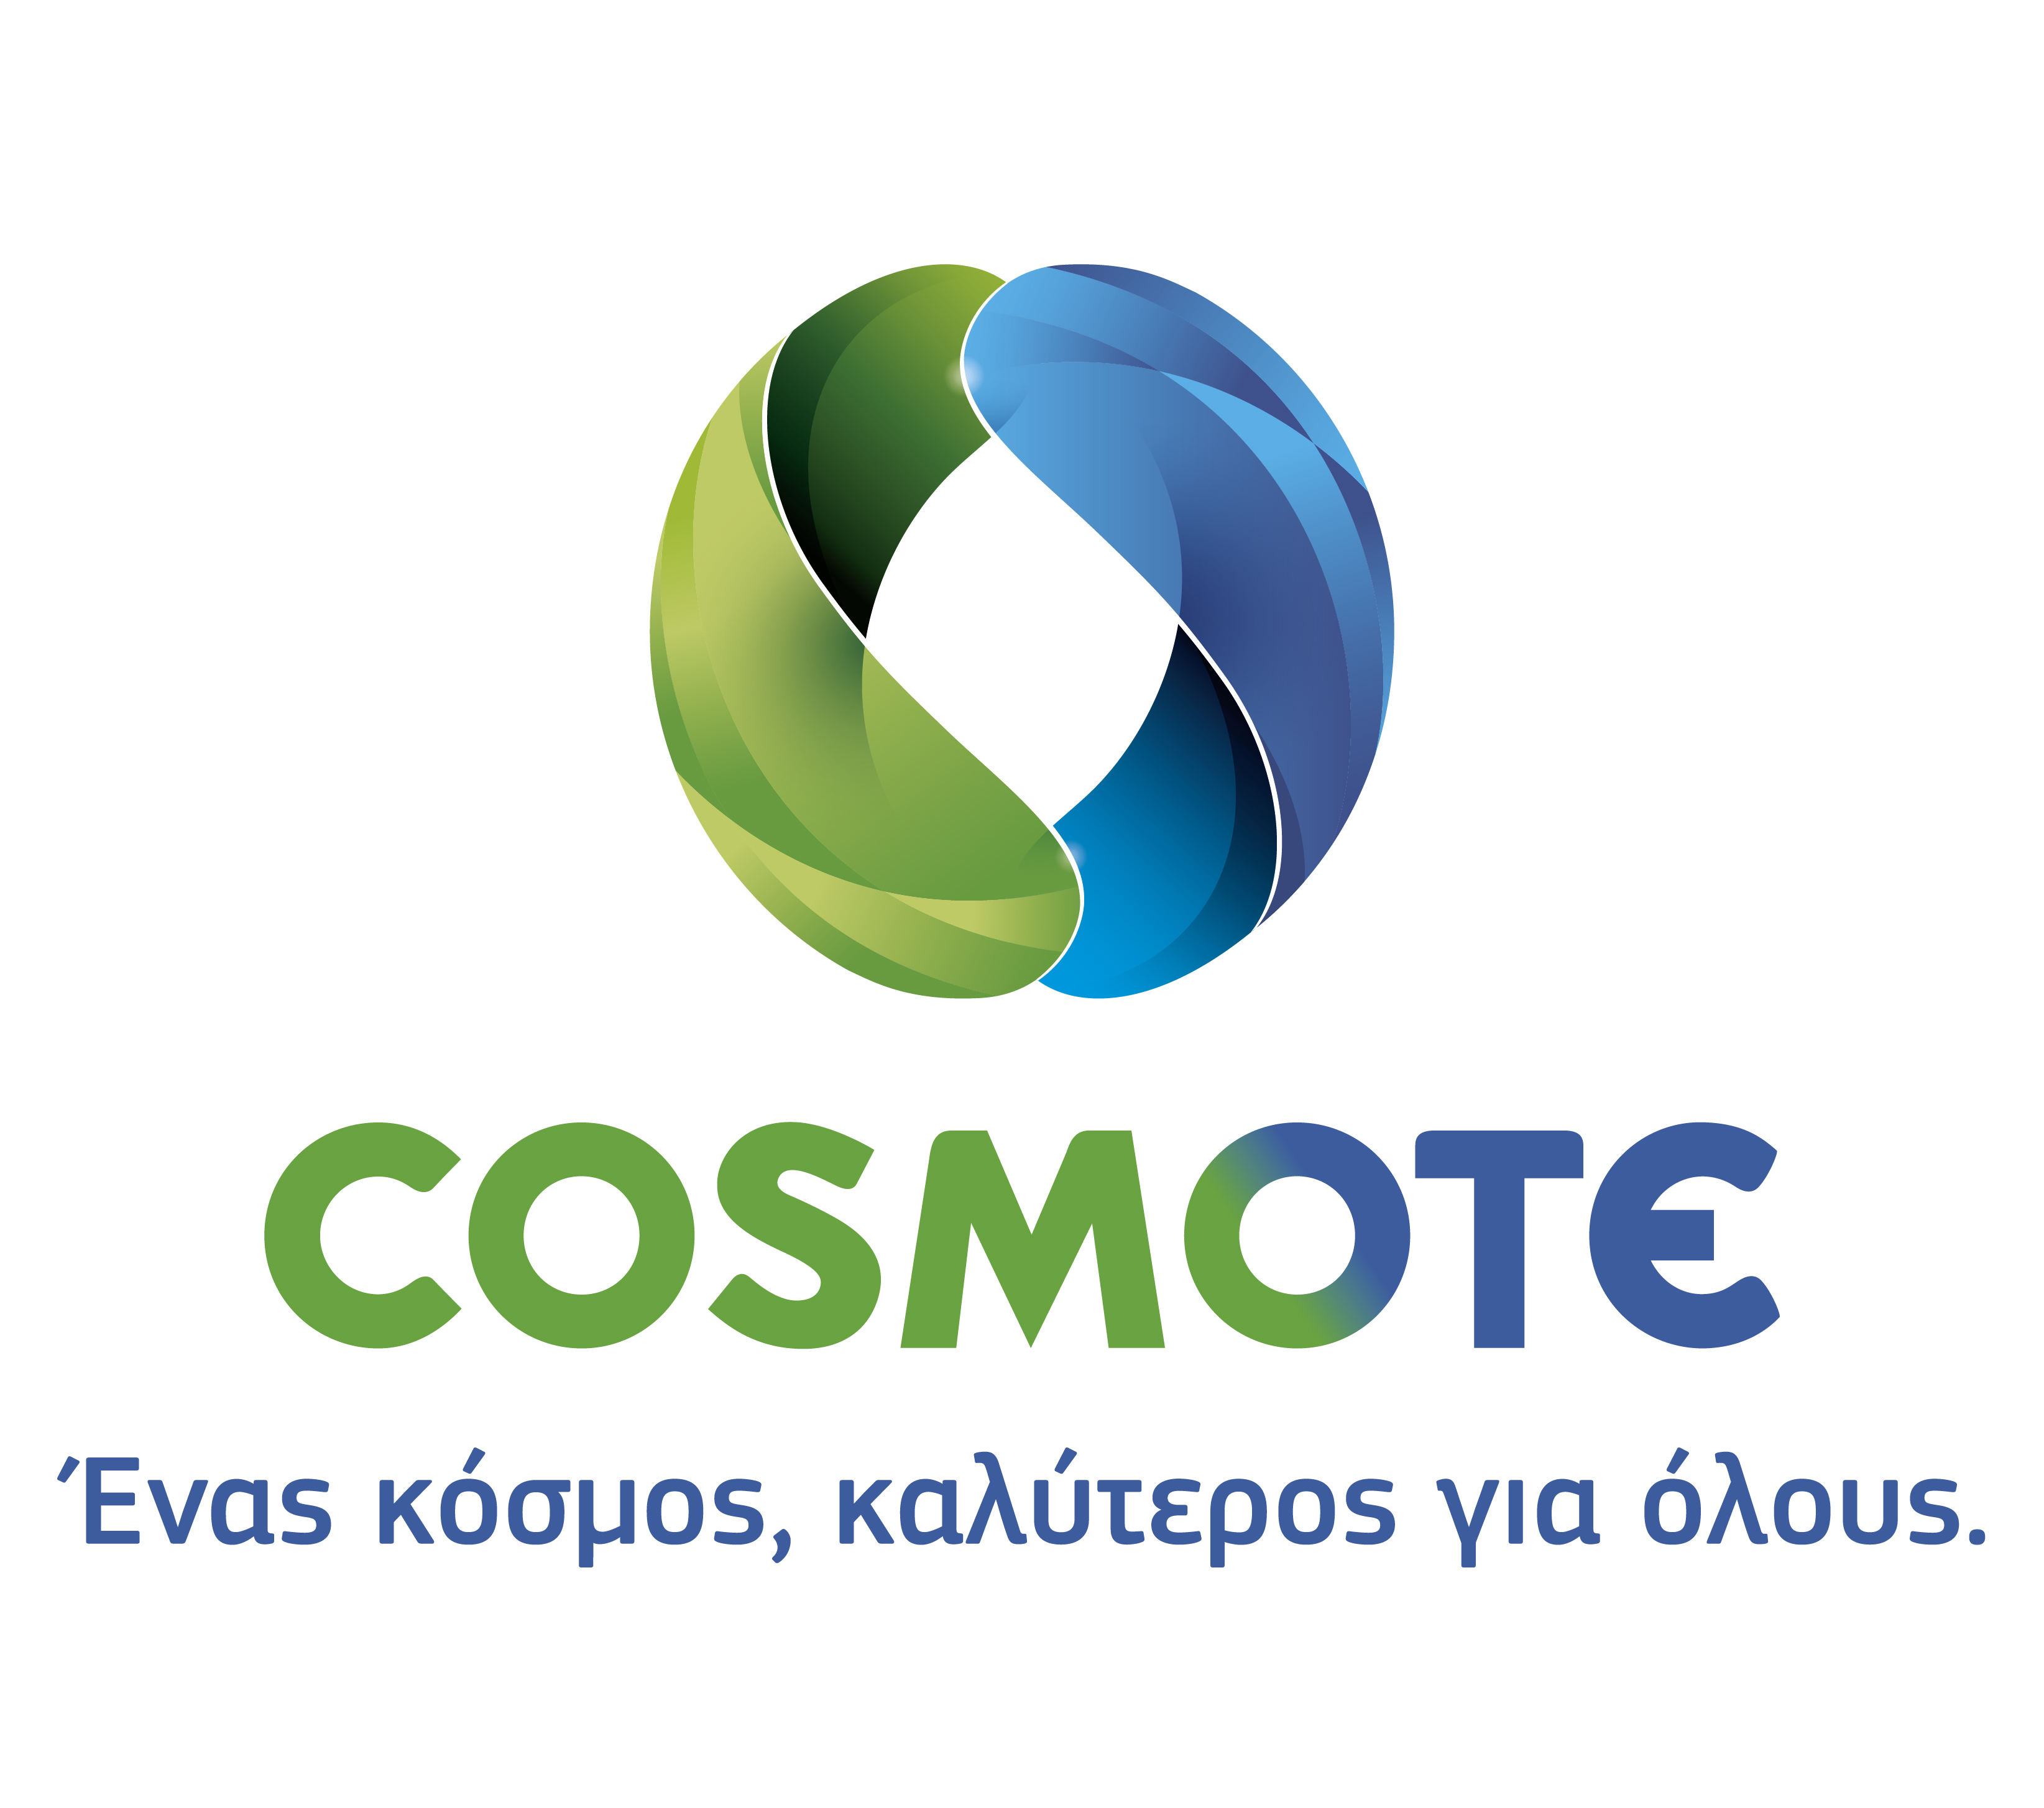 Η Cosmote διευκολύνει την επικοινωνία από και προς τον Λίβανο